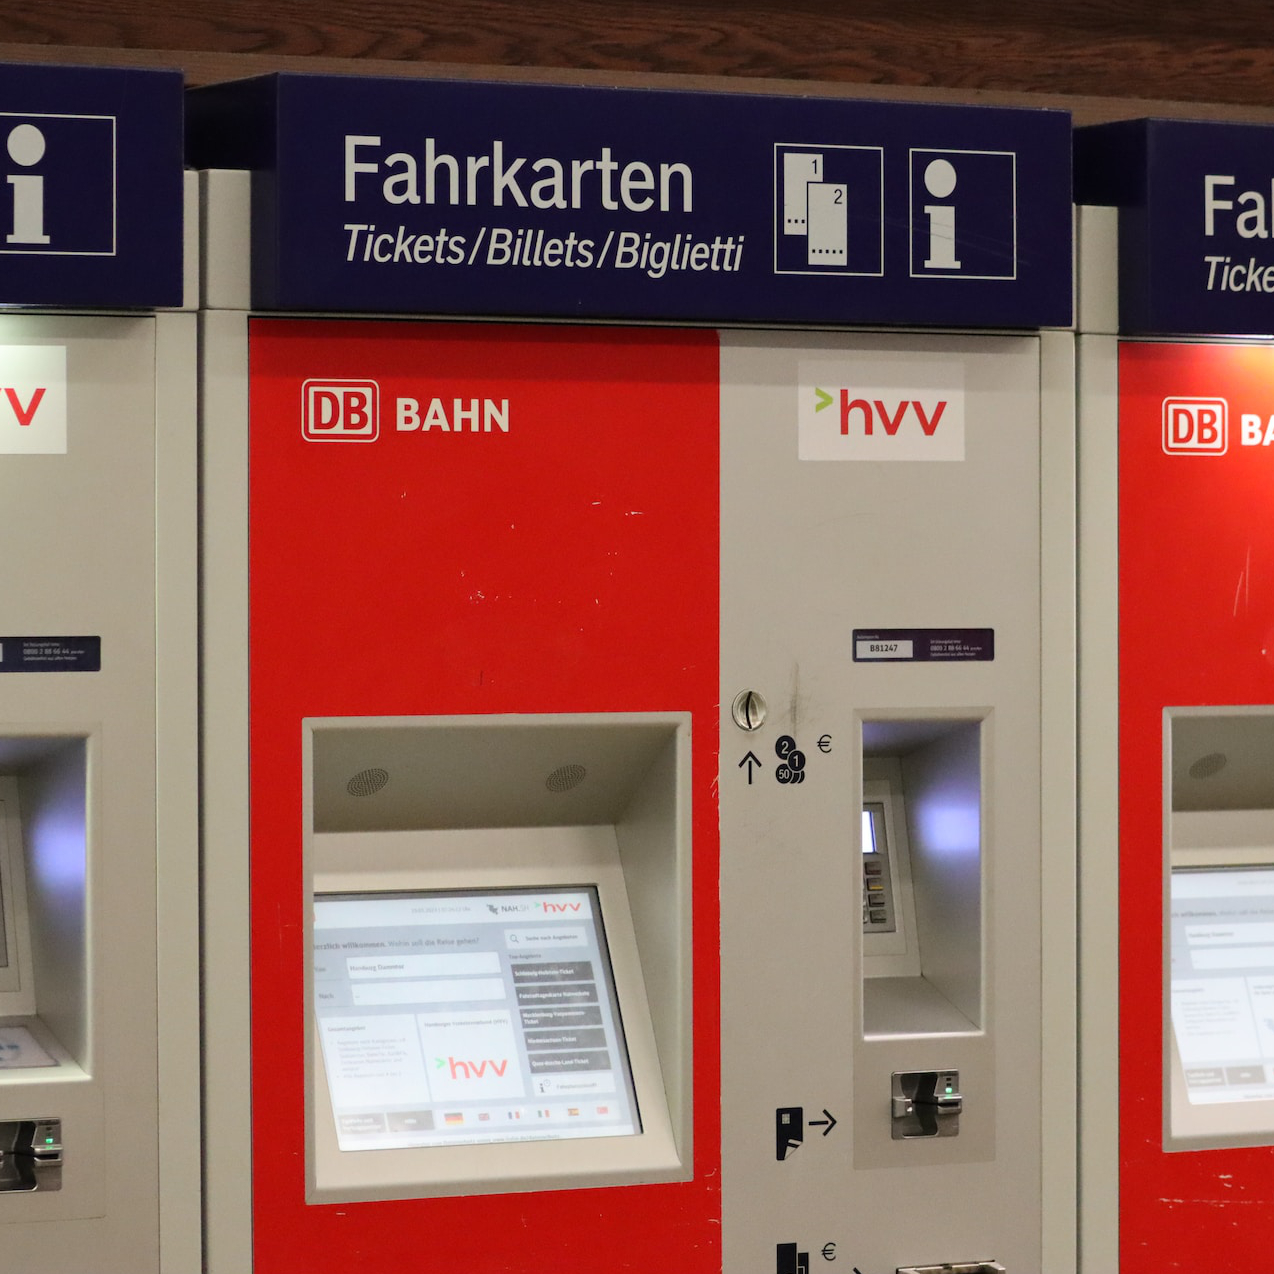 Bild zeigt einen typischen Fahrkartenautomat für den SPNV und wird als Symbolbild für das Thema Deutschlandticket verwendet.